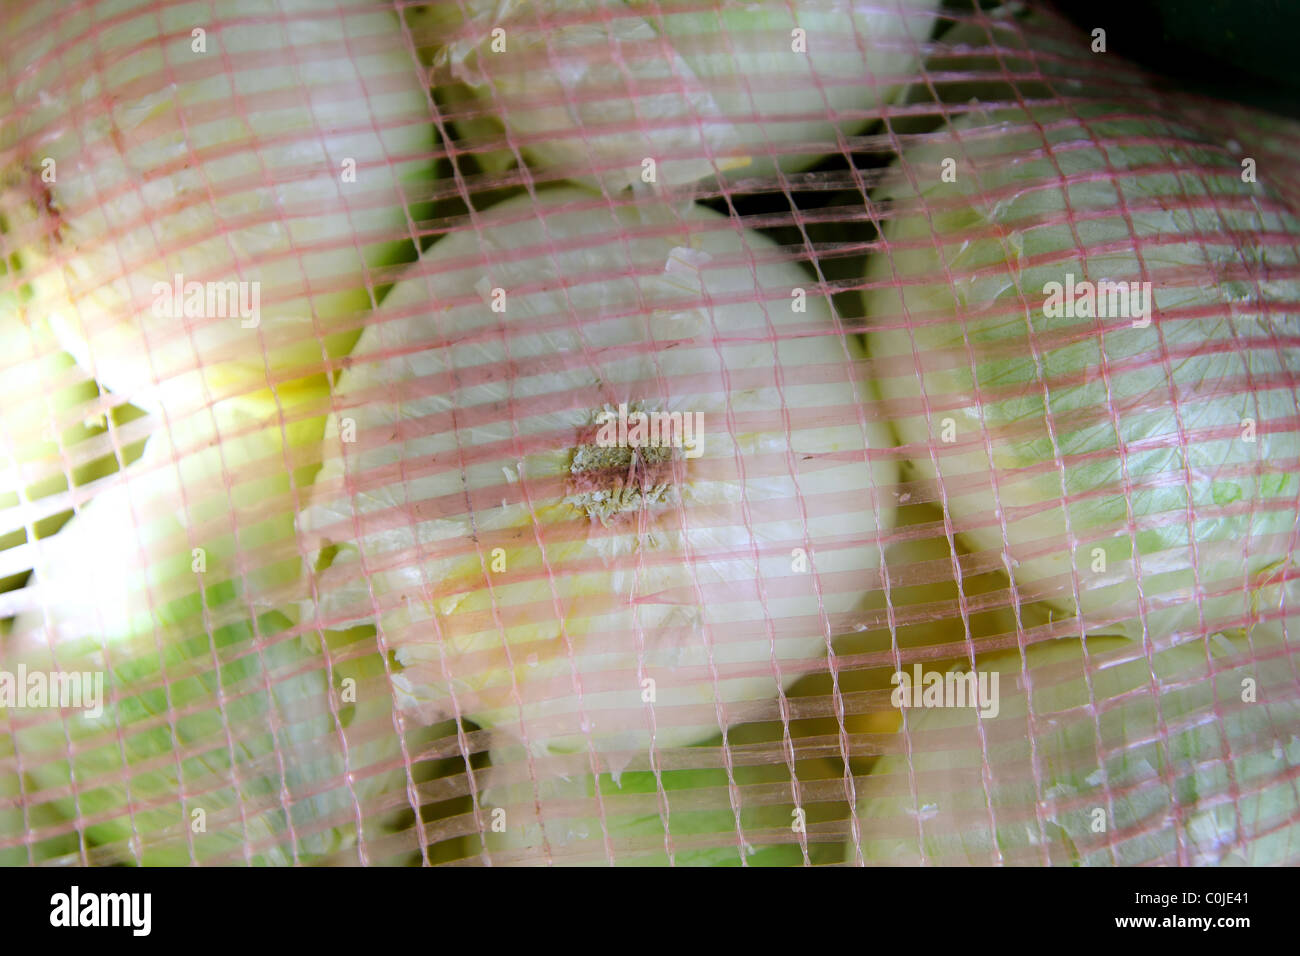 Molti onion vista dal sacco net nel mercato Foto Stock